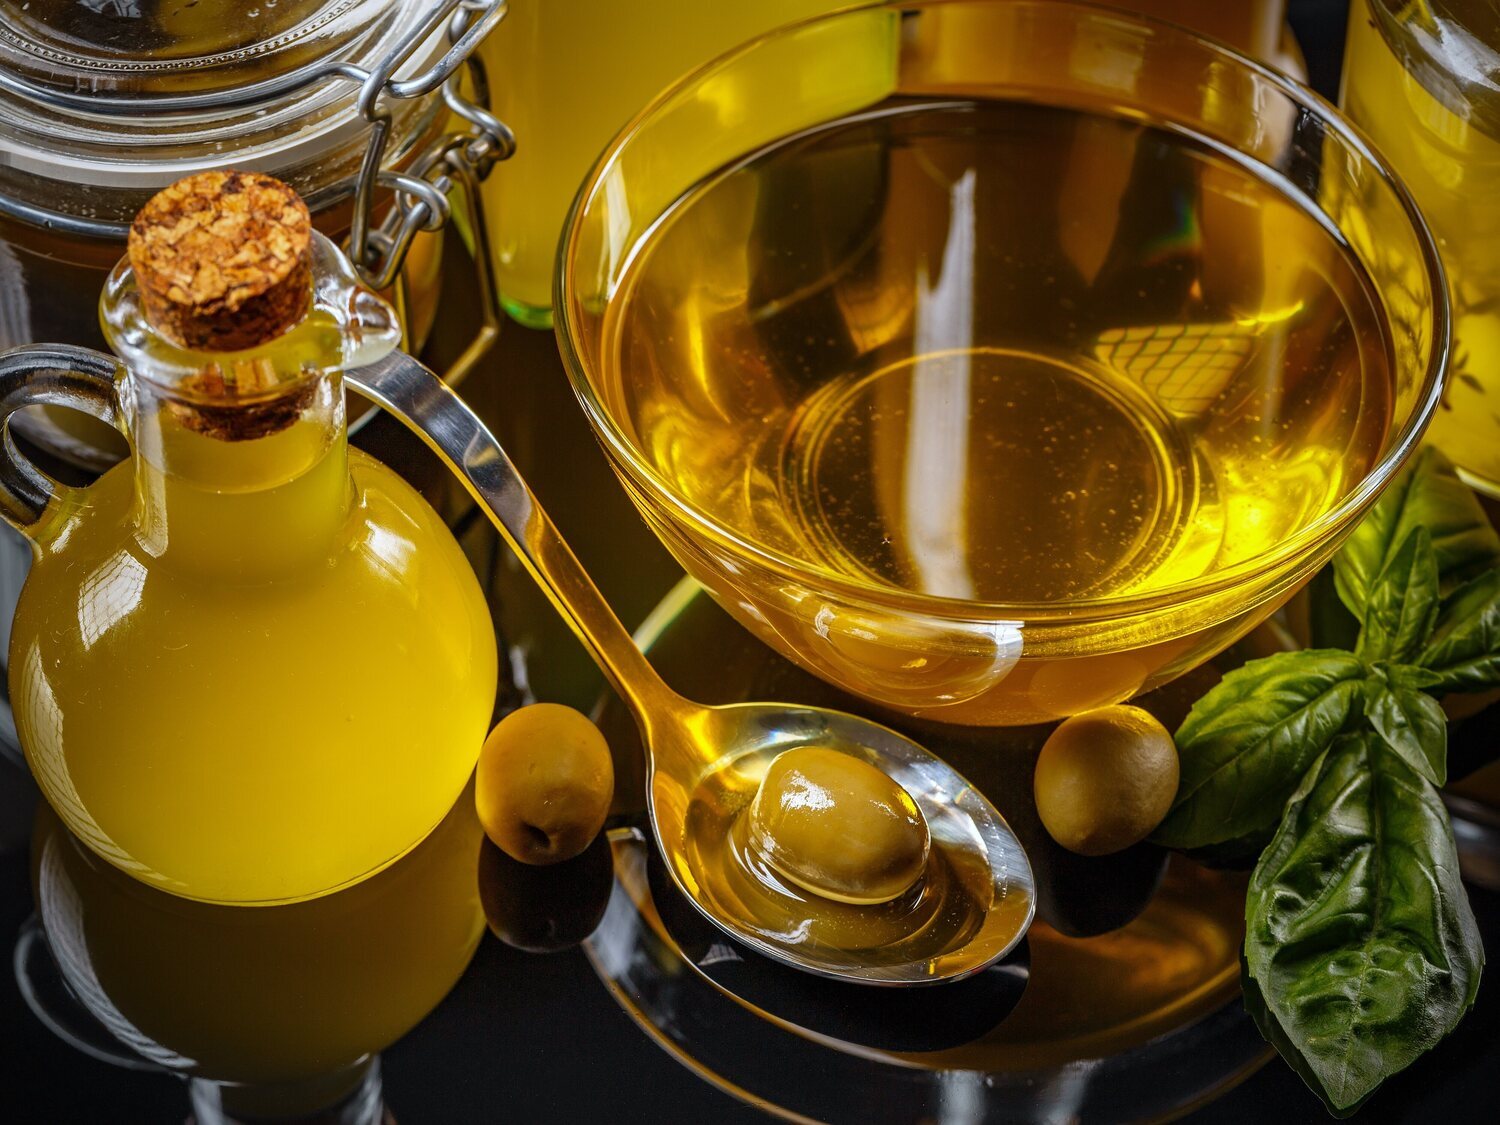 Un productor advierte del precio que puede tener el aceite de oliva en las próxima semanas